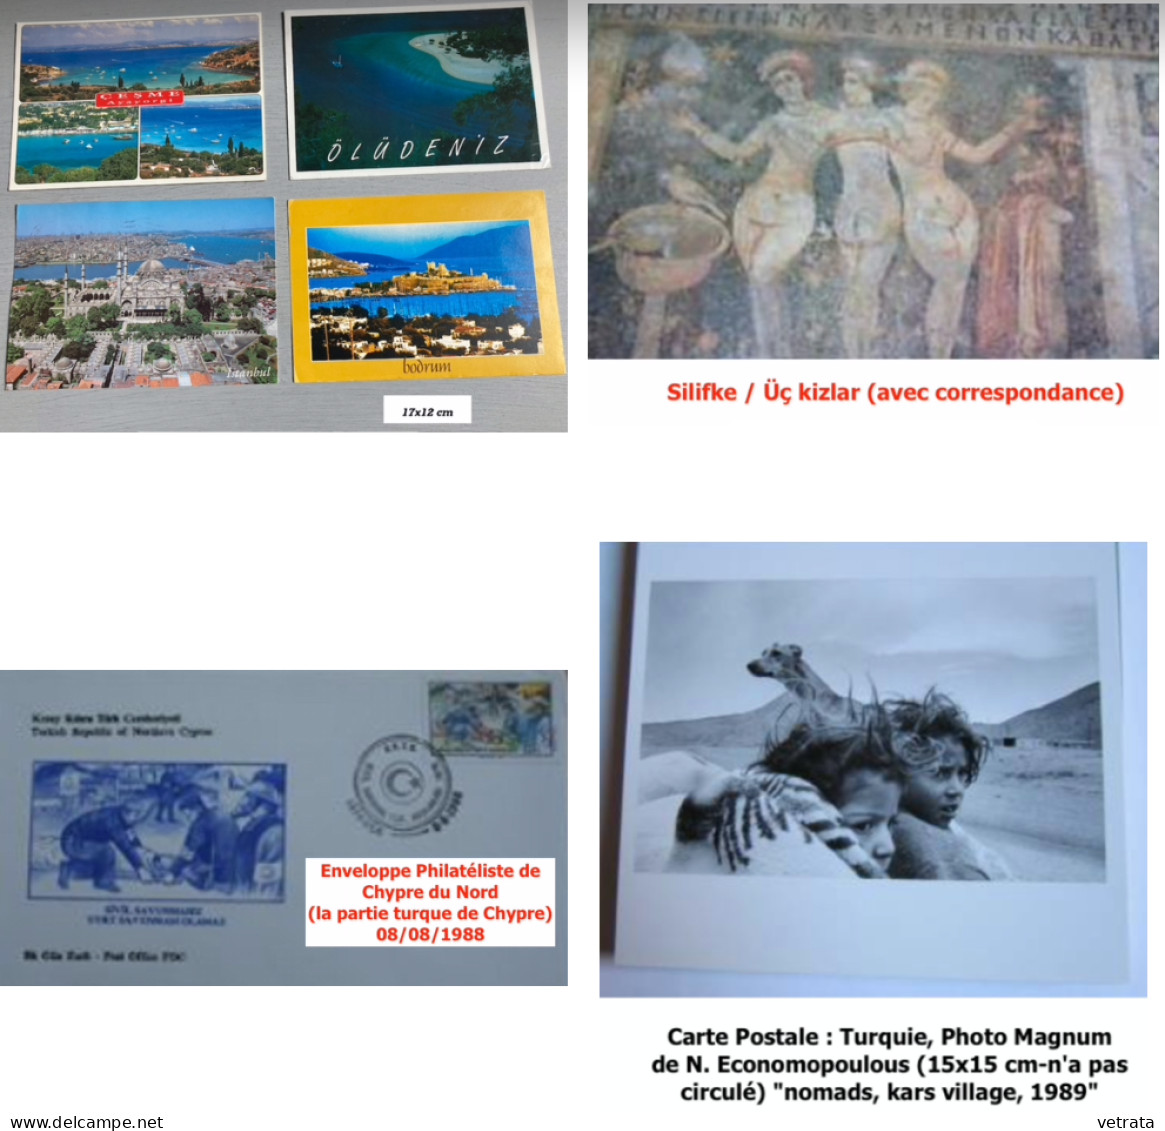 TURQUIE : 2 Revues /1 Guide /7 Cartes Postales/2 Enveloppes/1 Télécarte/3 Billets & 31 Timbres ///   (envoi uniquement p